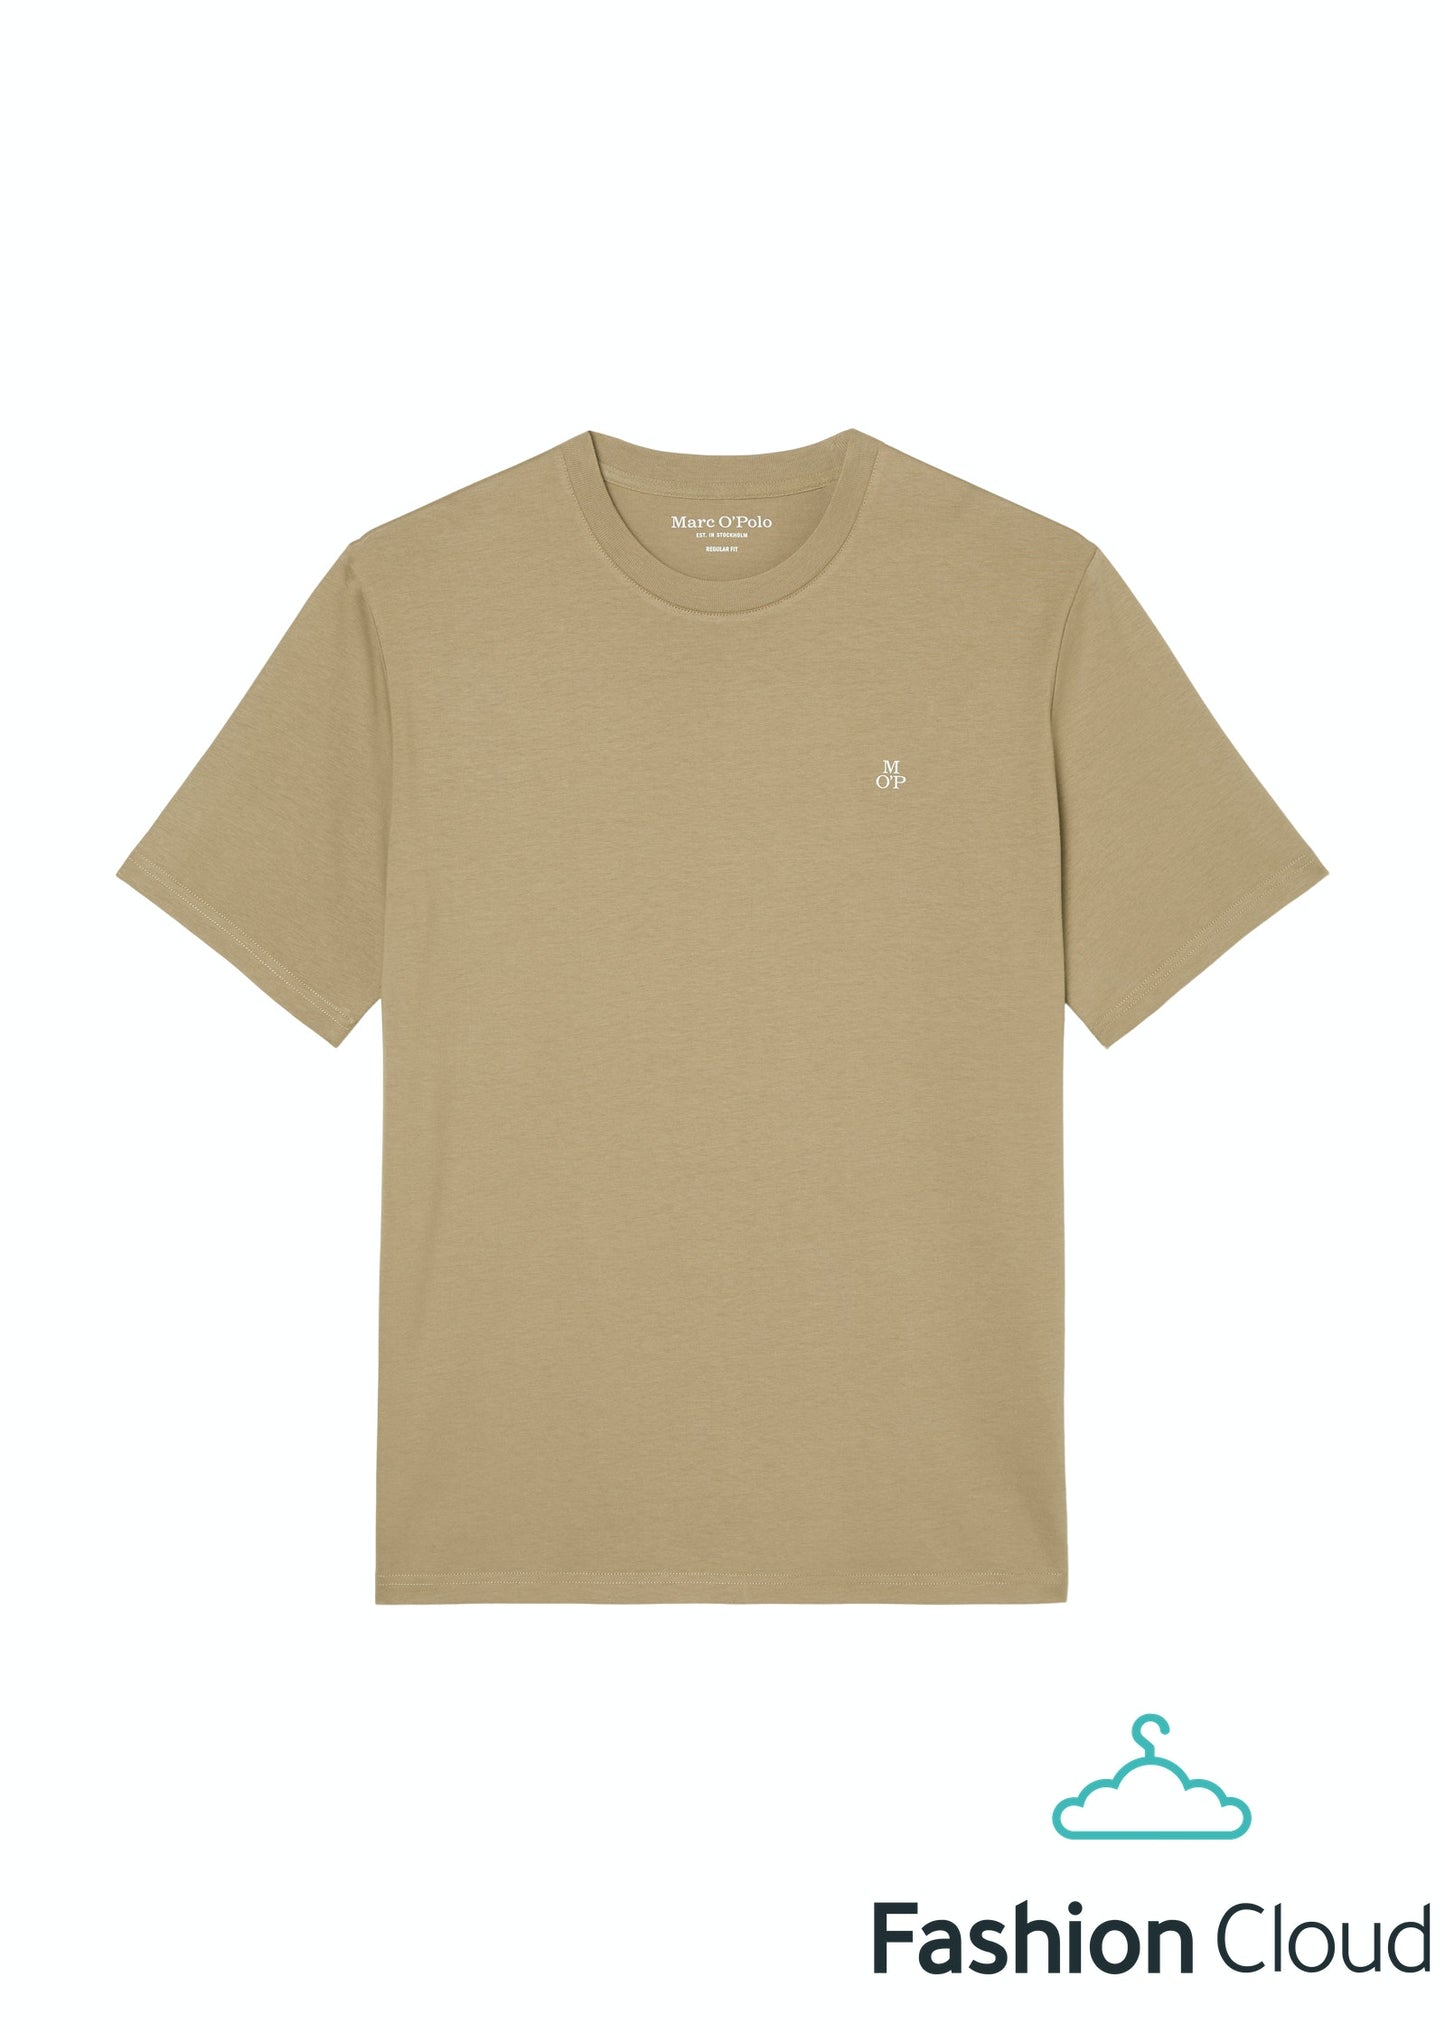 T-shirt, short sleeve, logo print, - 321201251054